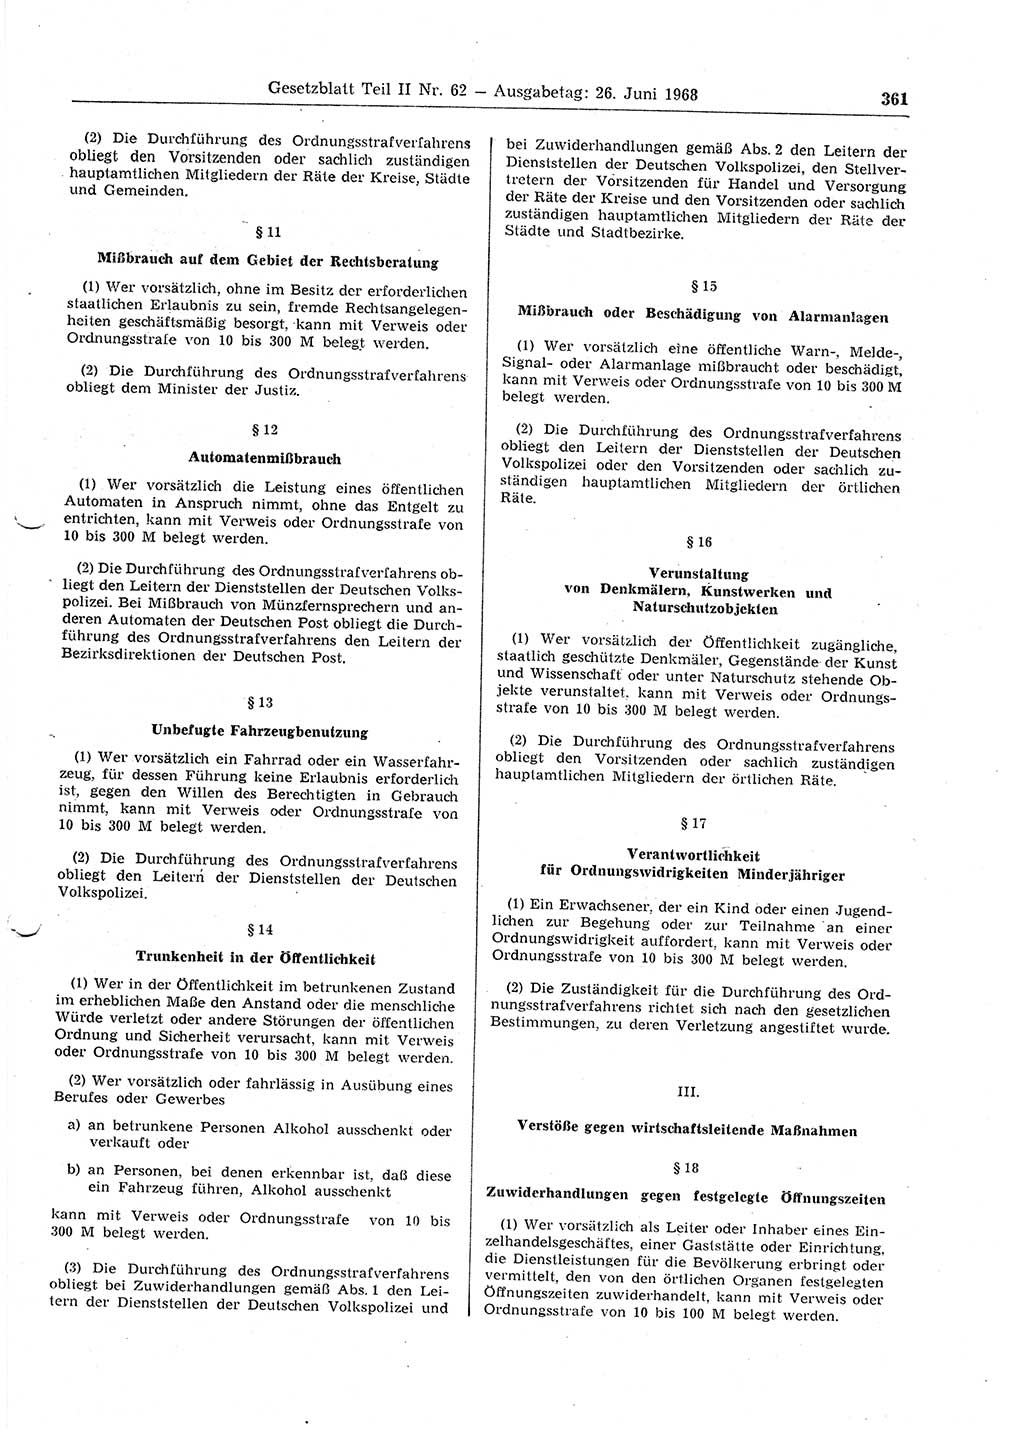 Gesetzblatt (GBl.) der Deutschen Demokratischen Republik (DDR) Teil ⅠⅠ 1968, Seite 361 (GBl. DDR ⅠⅠ 1968, S. 361)